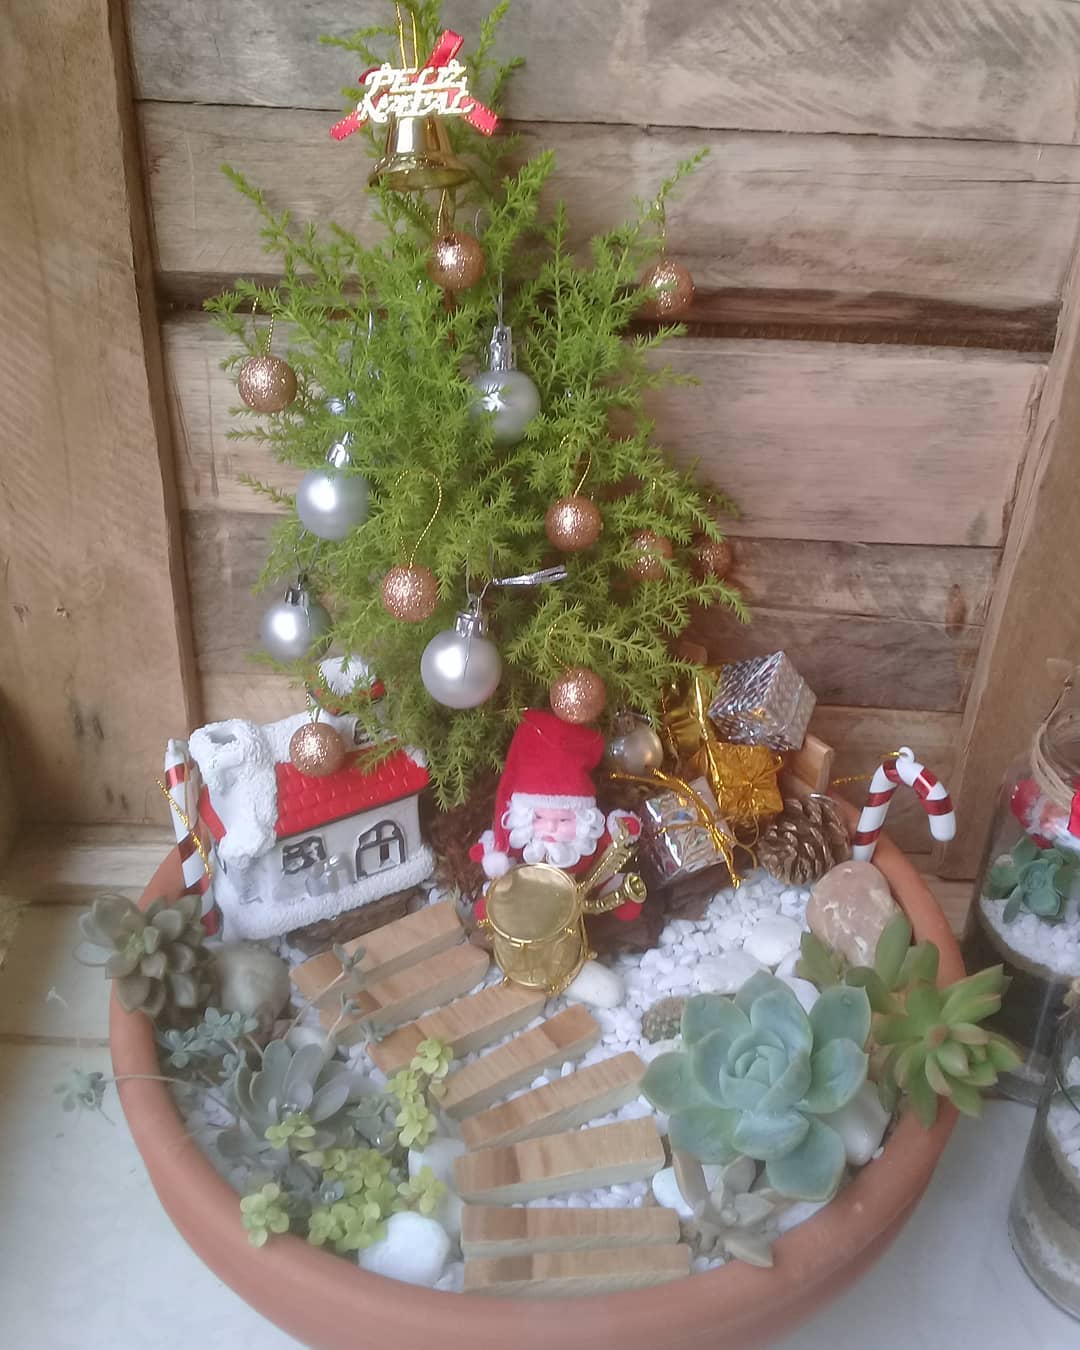 Decoración navideña para el jardín: 30 ideas creativas y fáciles de hacer